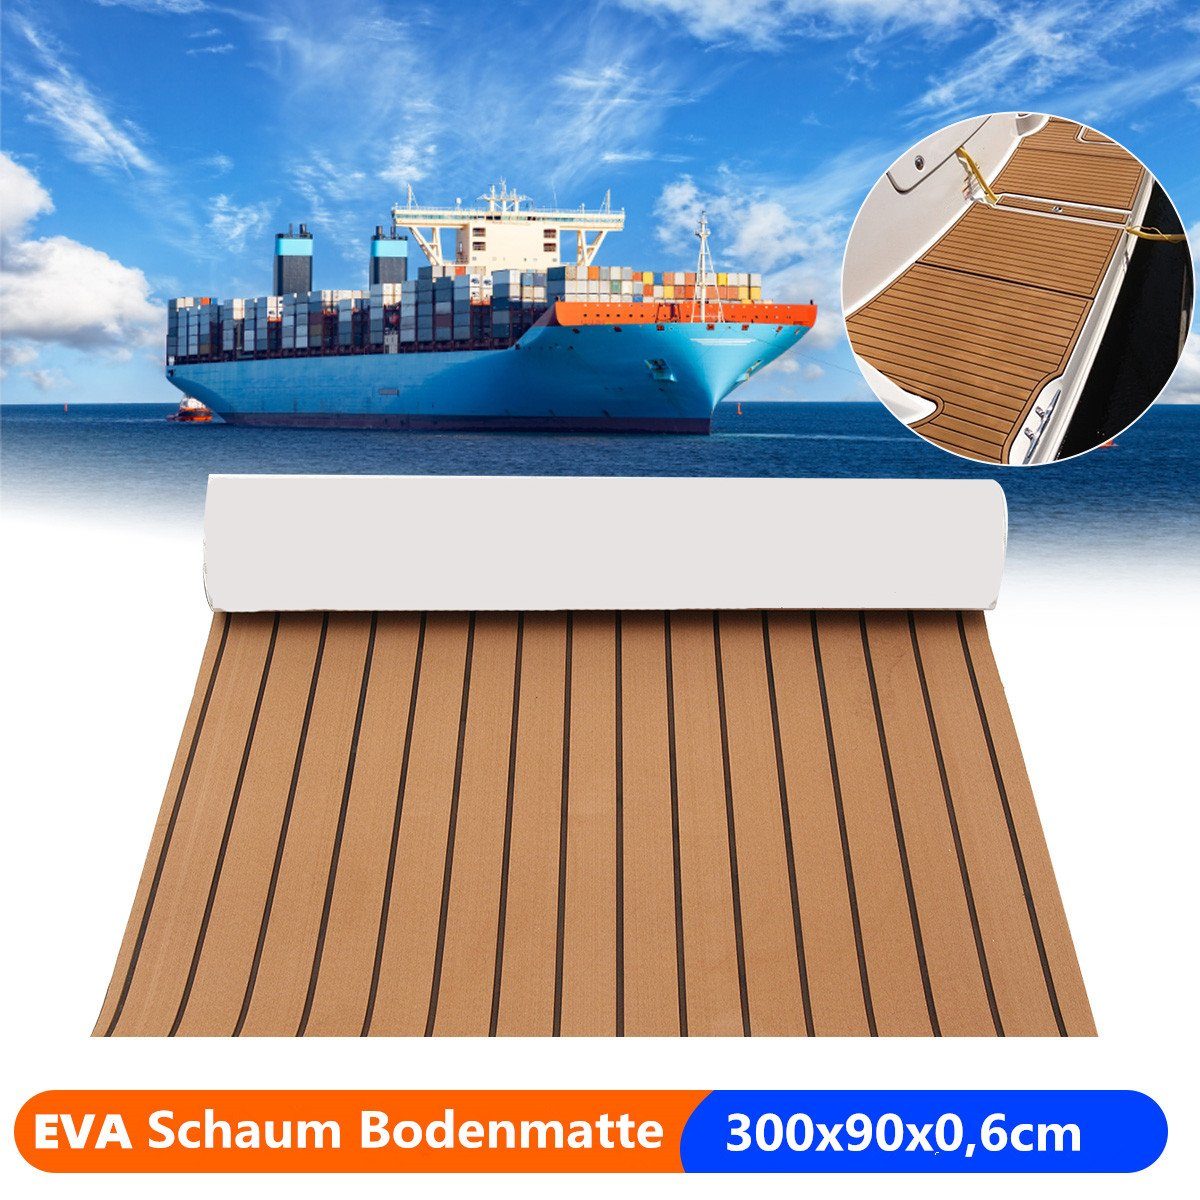 Boot Bodenbelag MATCC 6mm Bodenmatte, EVA Schaum 300x90cm